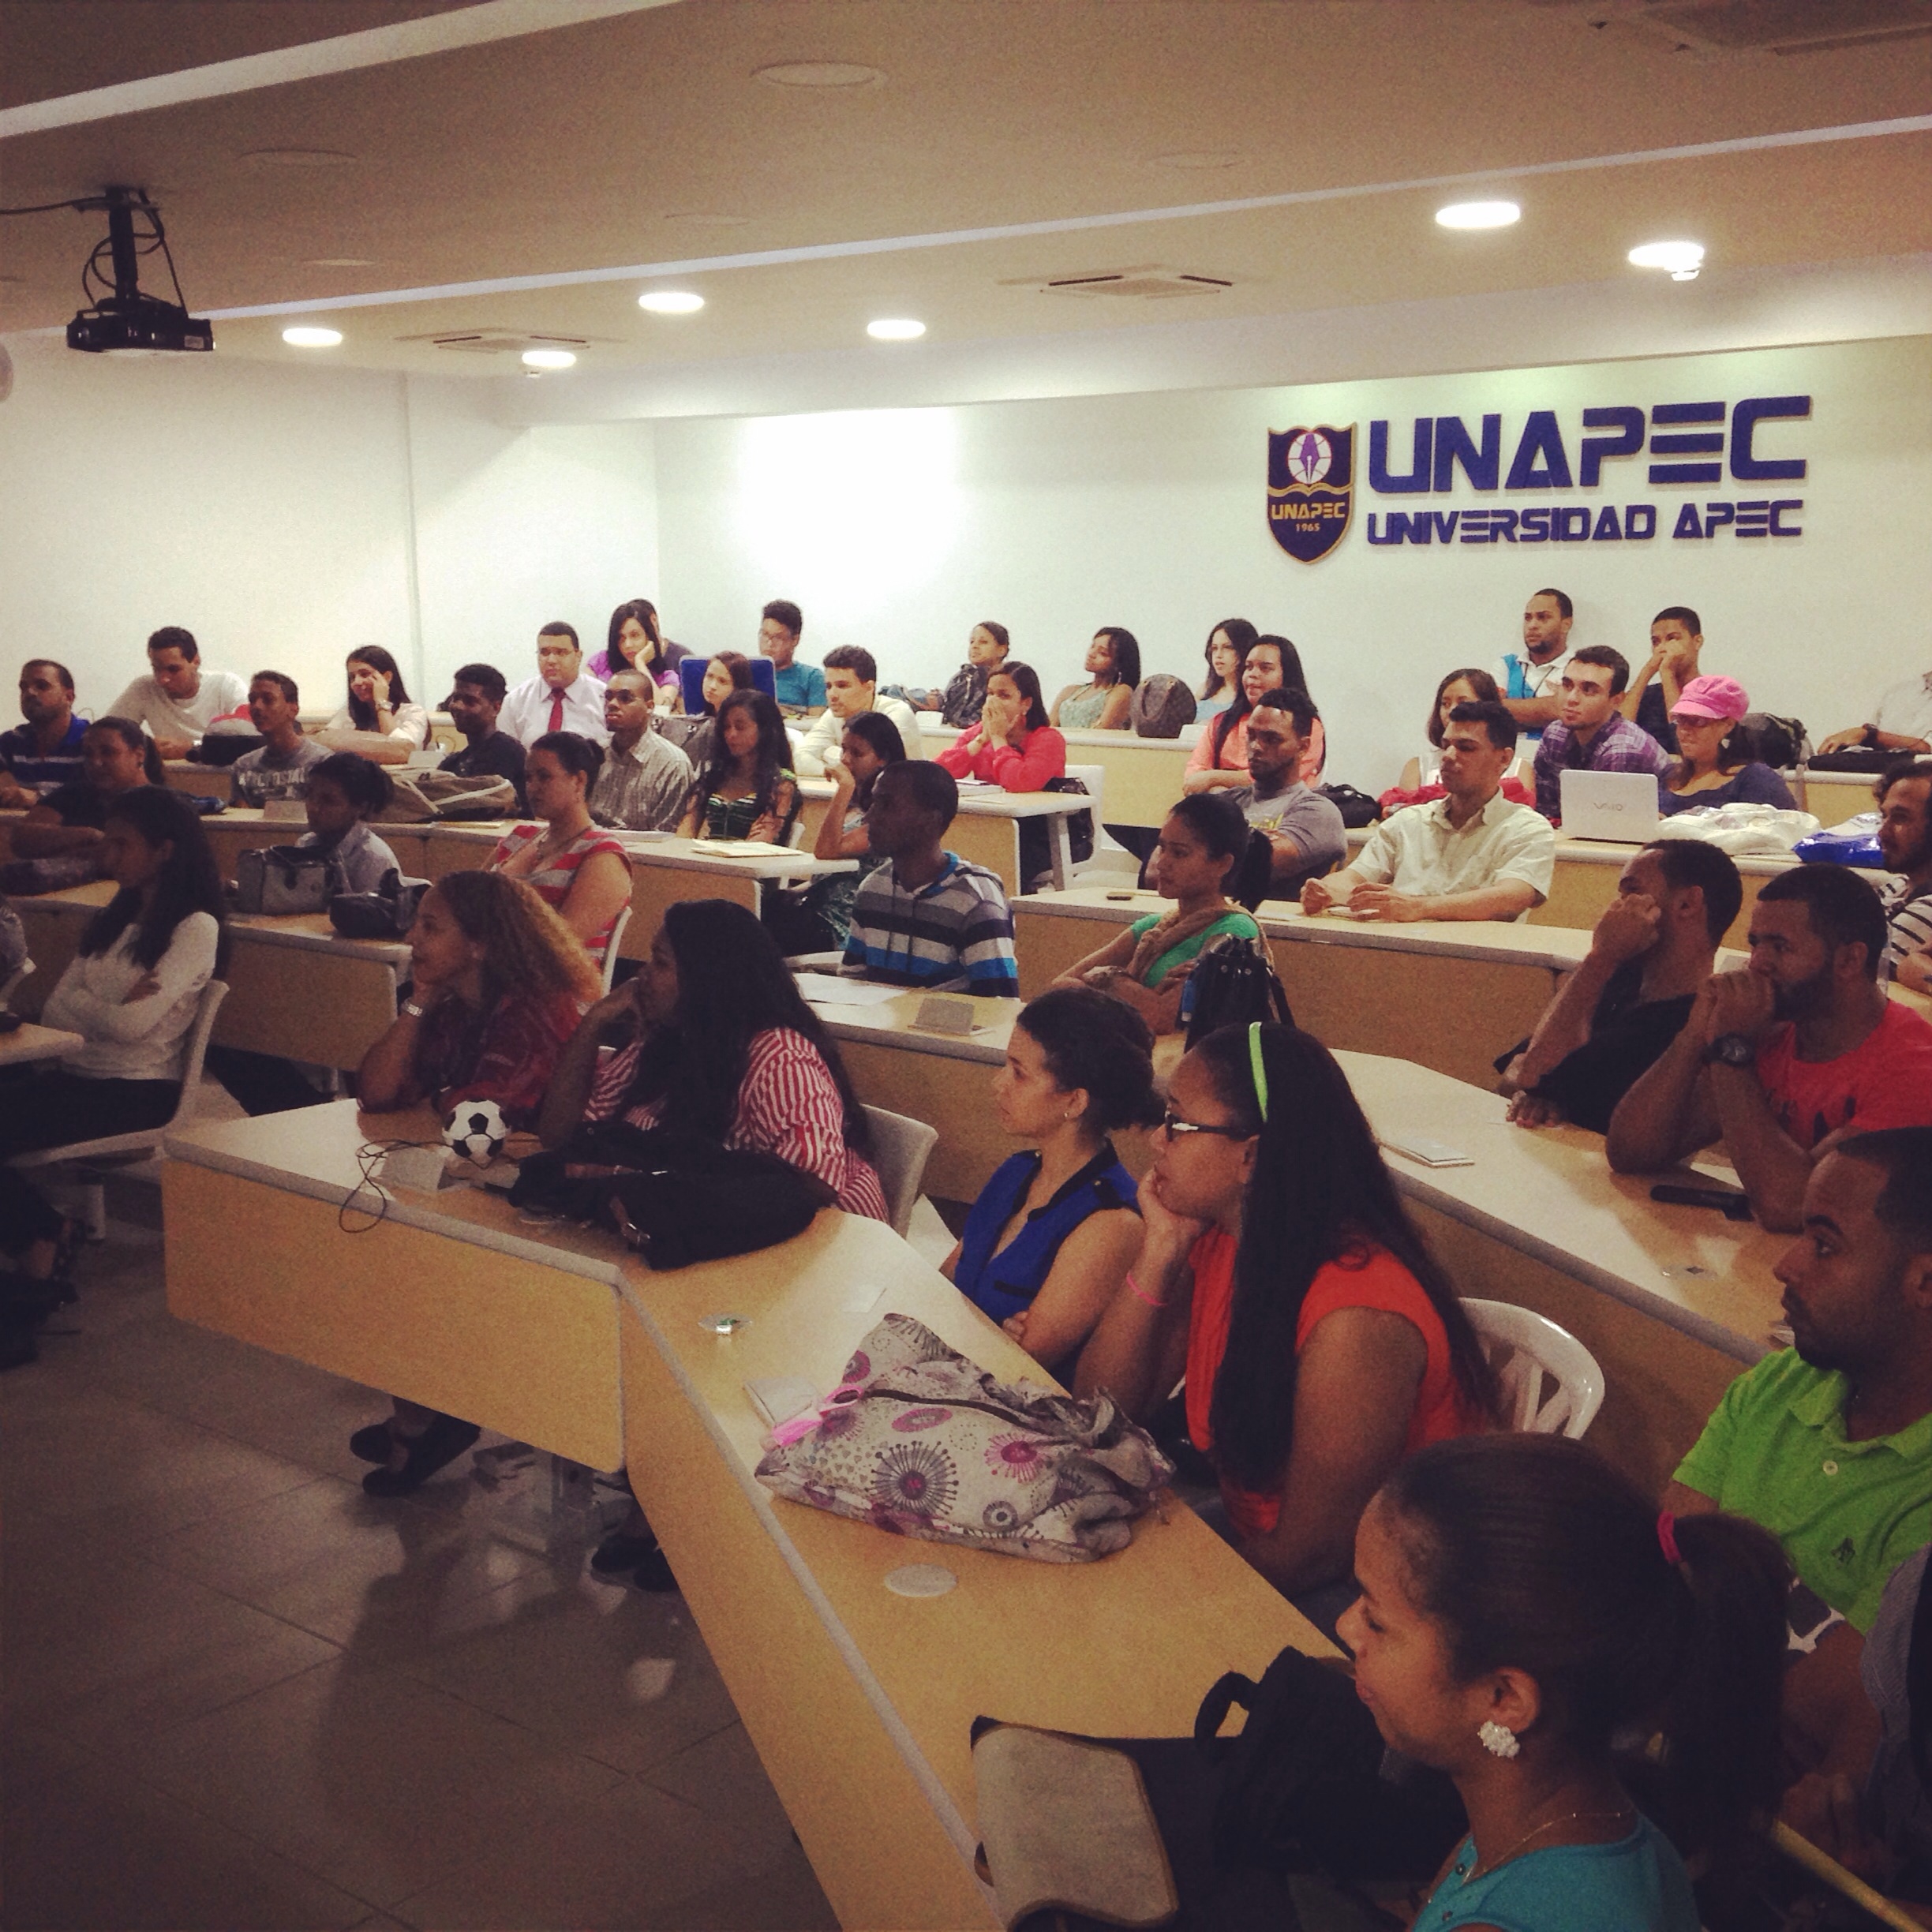 La actividad fue realizada en el Salón de Conferencias, ubicado en el Edificio I, de la UNAPEC